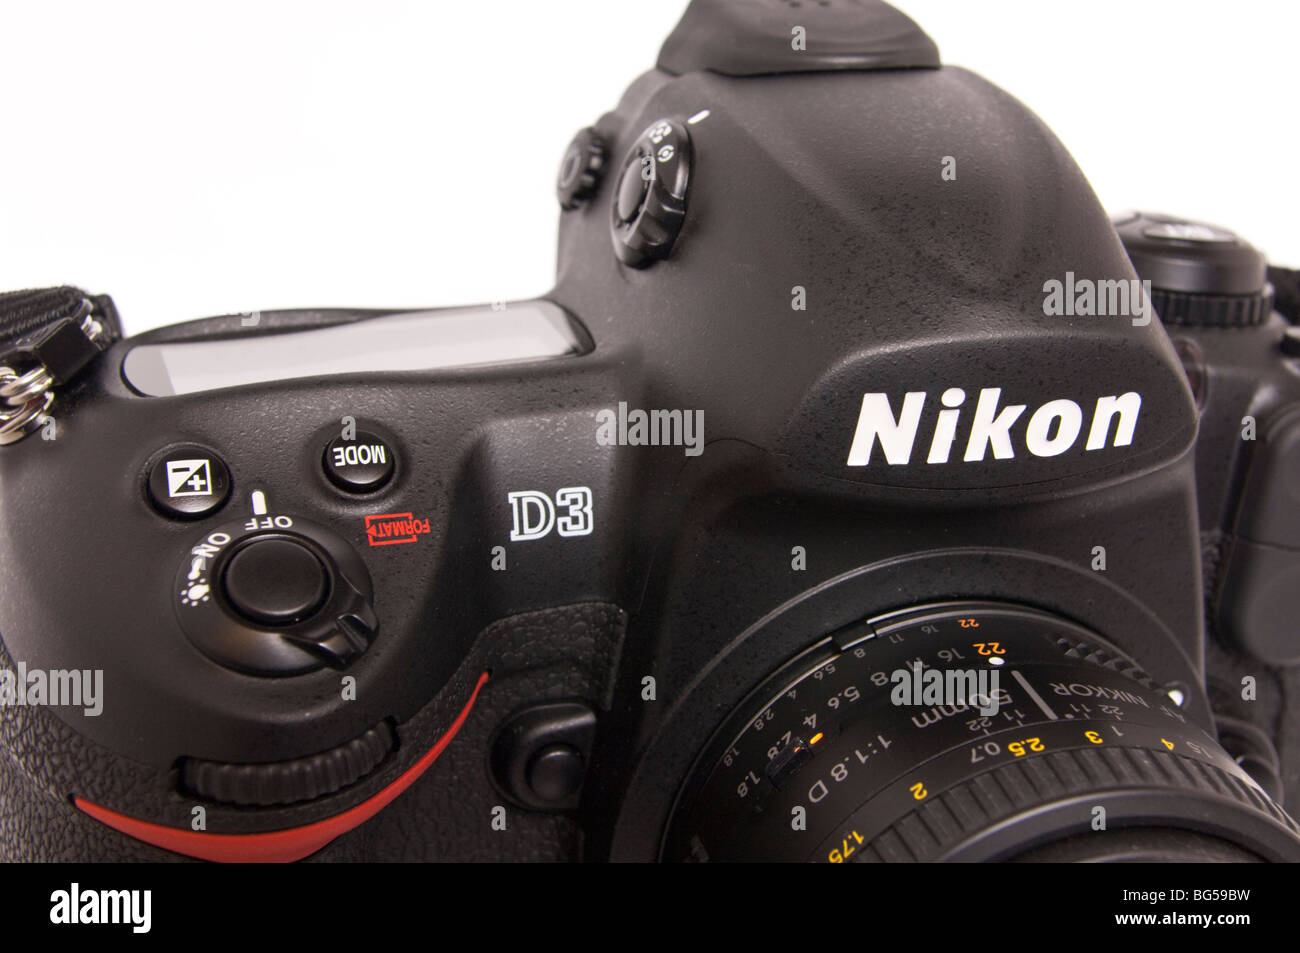 Nikon d3 immagini e fotografie stock ad alta risoluzione - Alamy